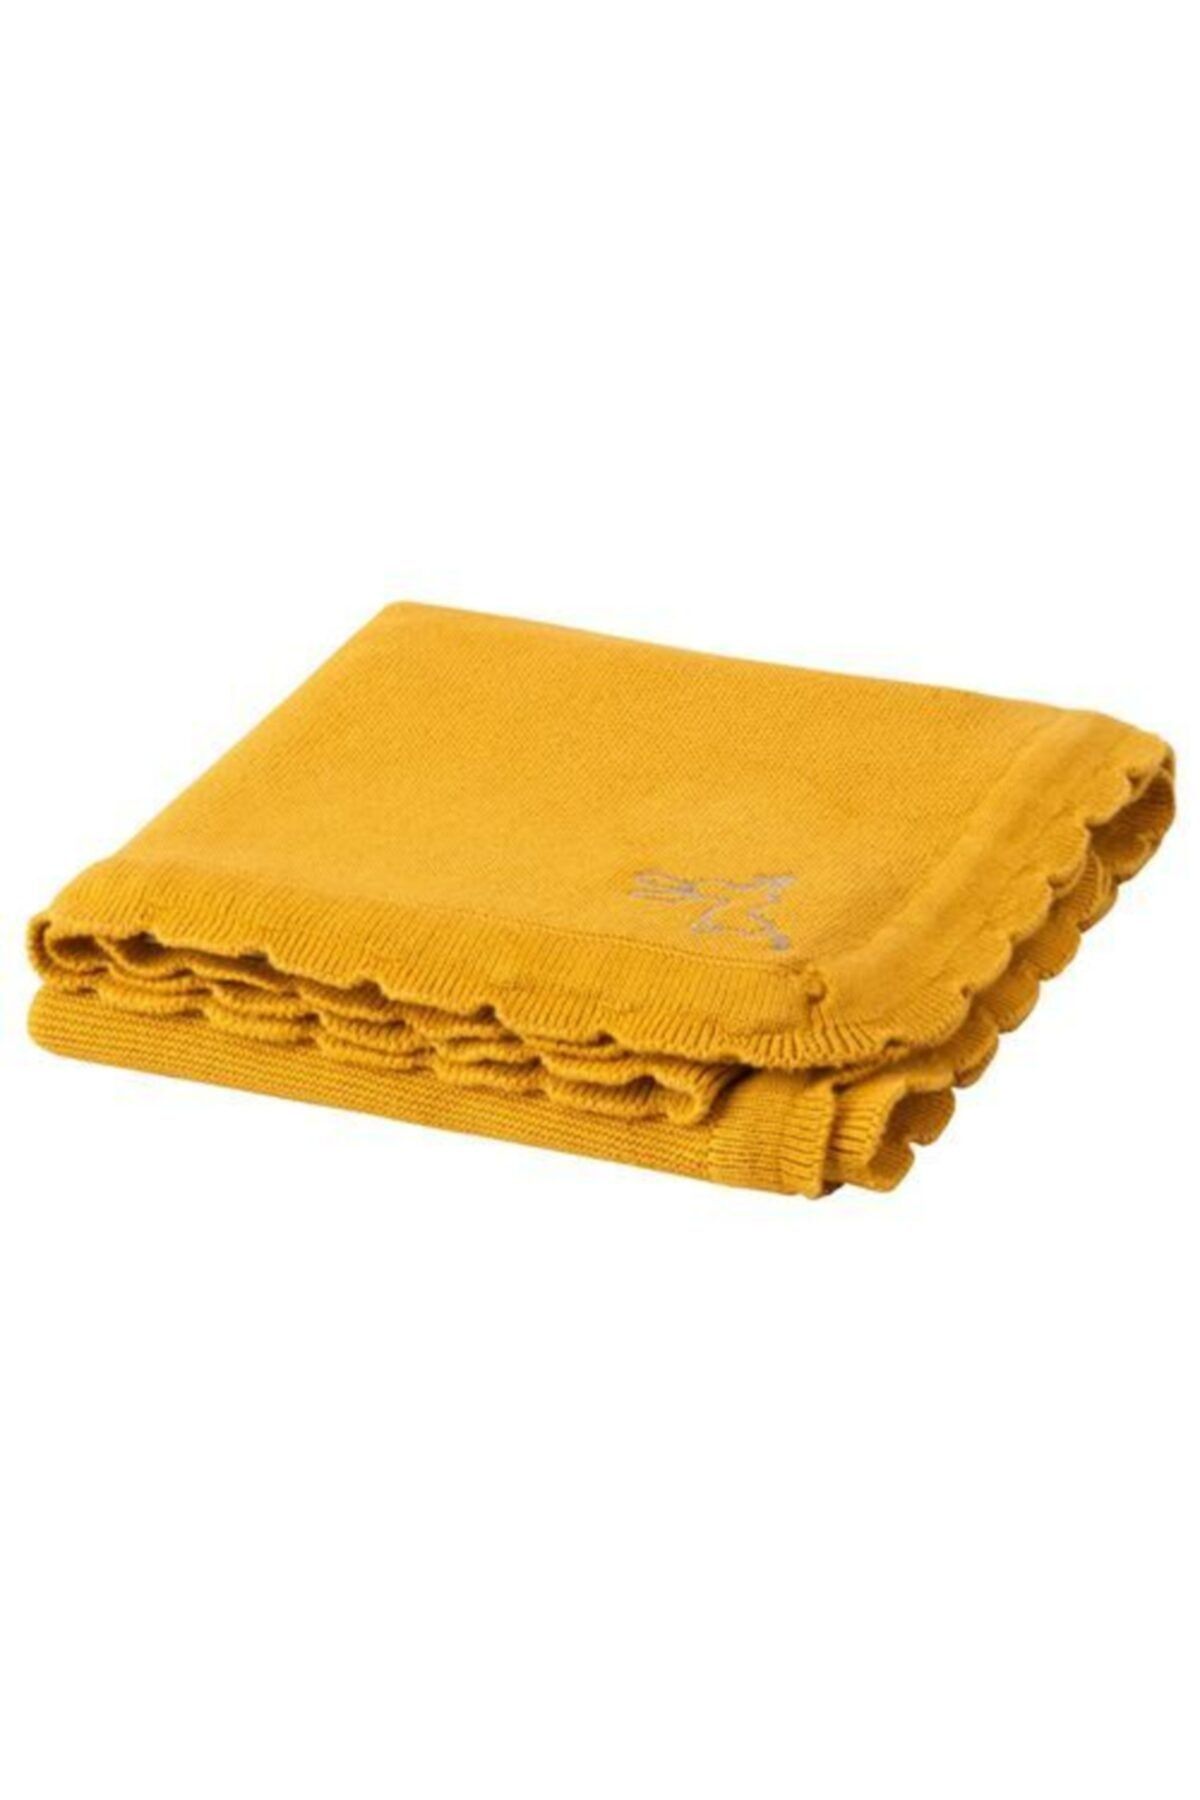 IKEA Bebek Battaniyesi 70x90 Cm Meridyendukkan Koyu Sarı -pamuklu Bebe Battaniye